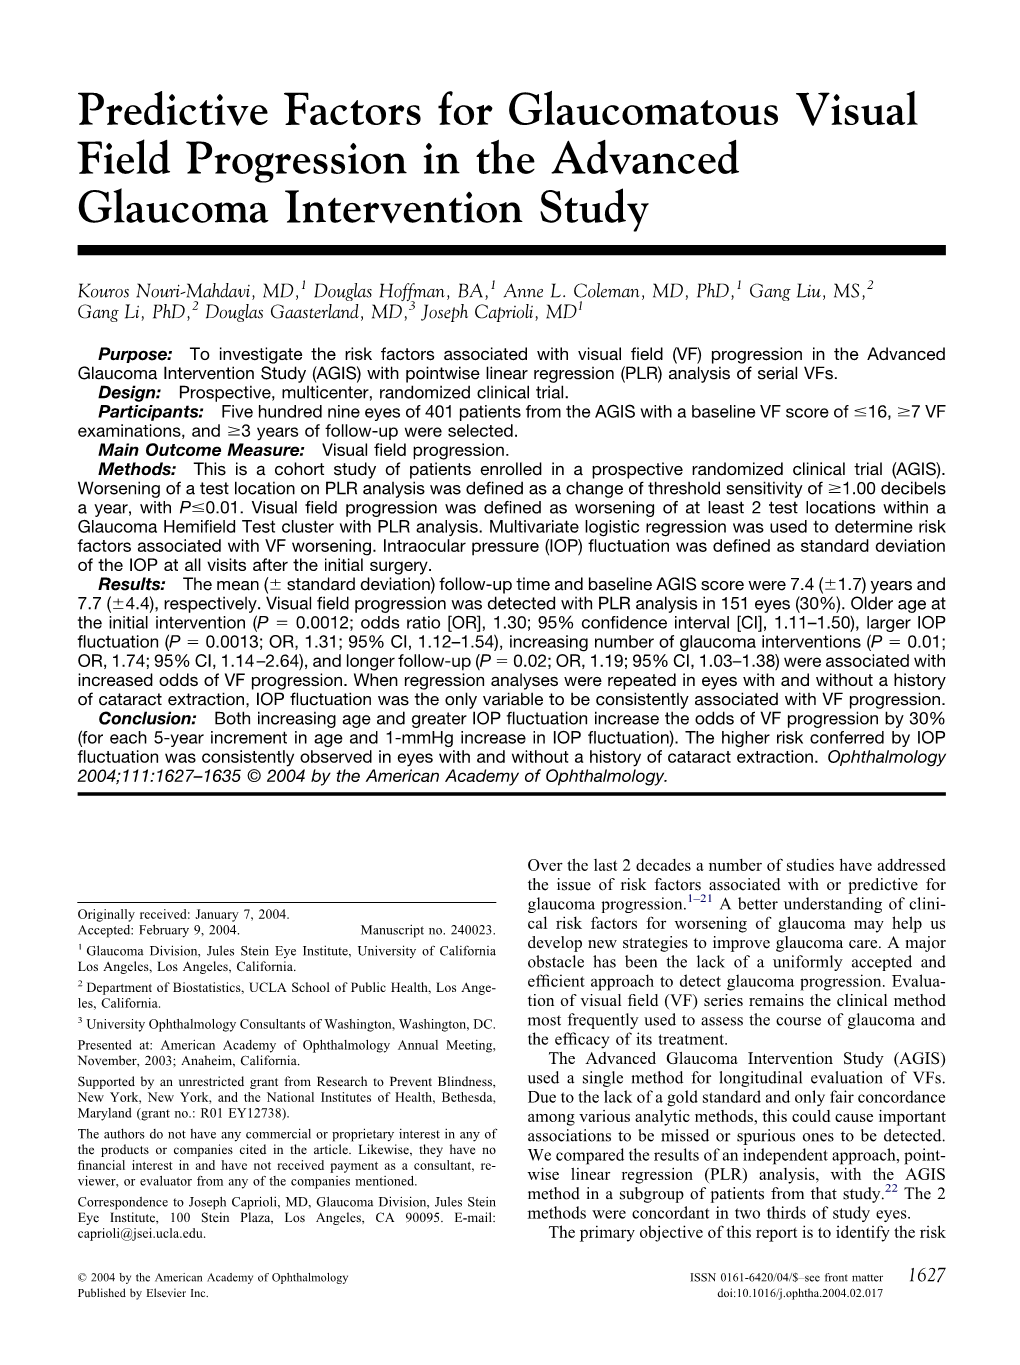 Predictive Factors for Glaucomatous Visual Field Progression in the Advanced Glaucoma Intervention Study